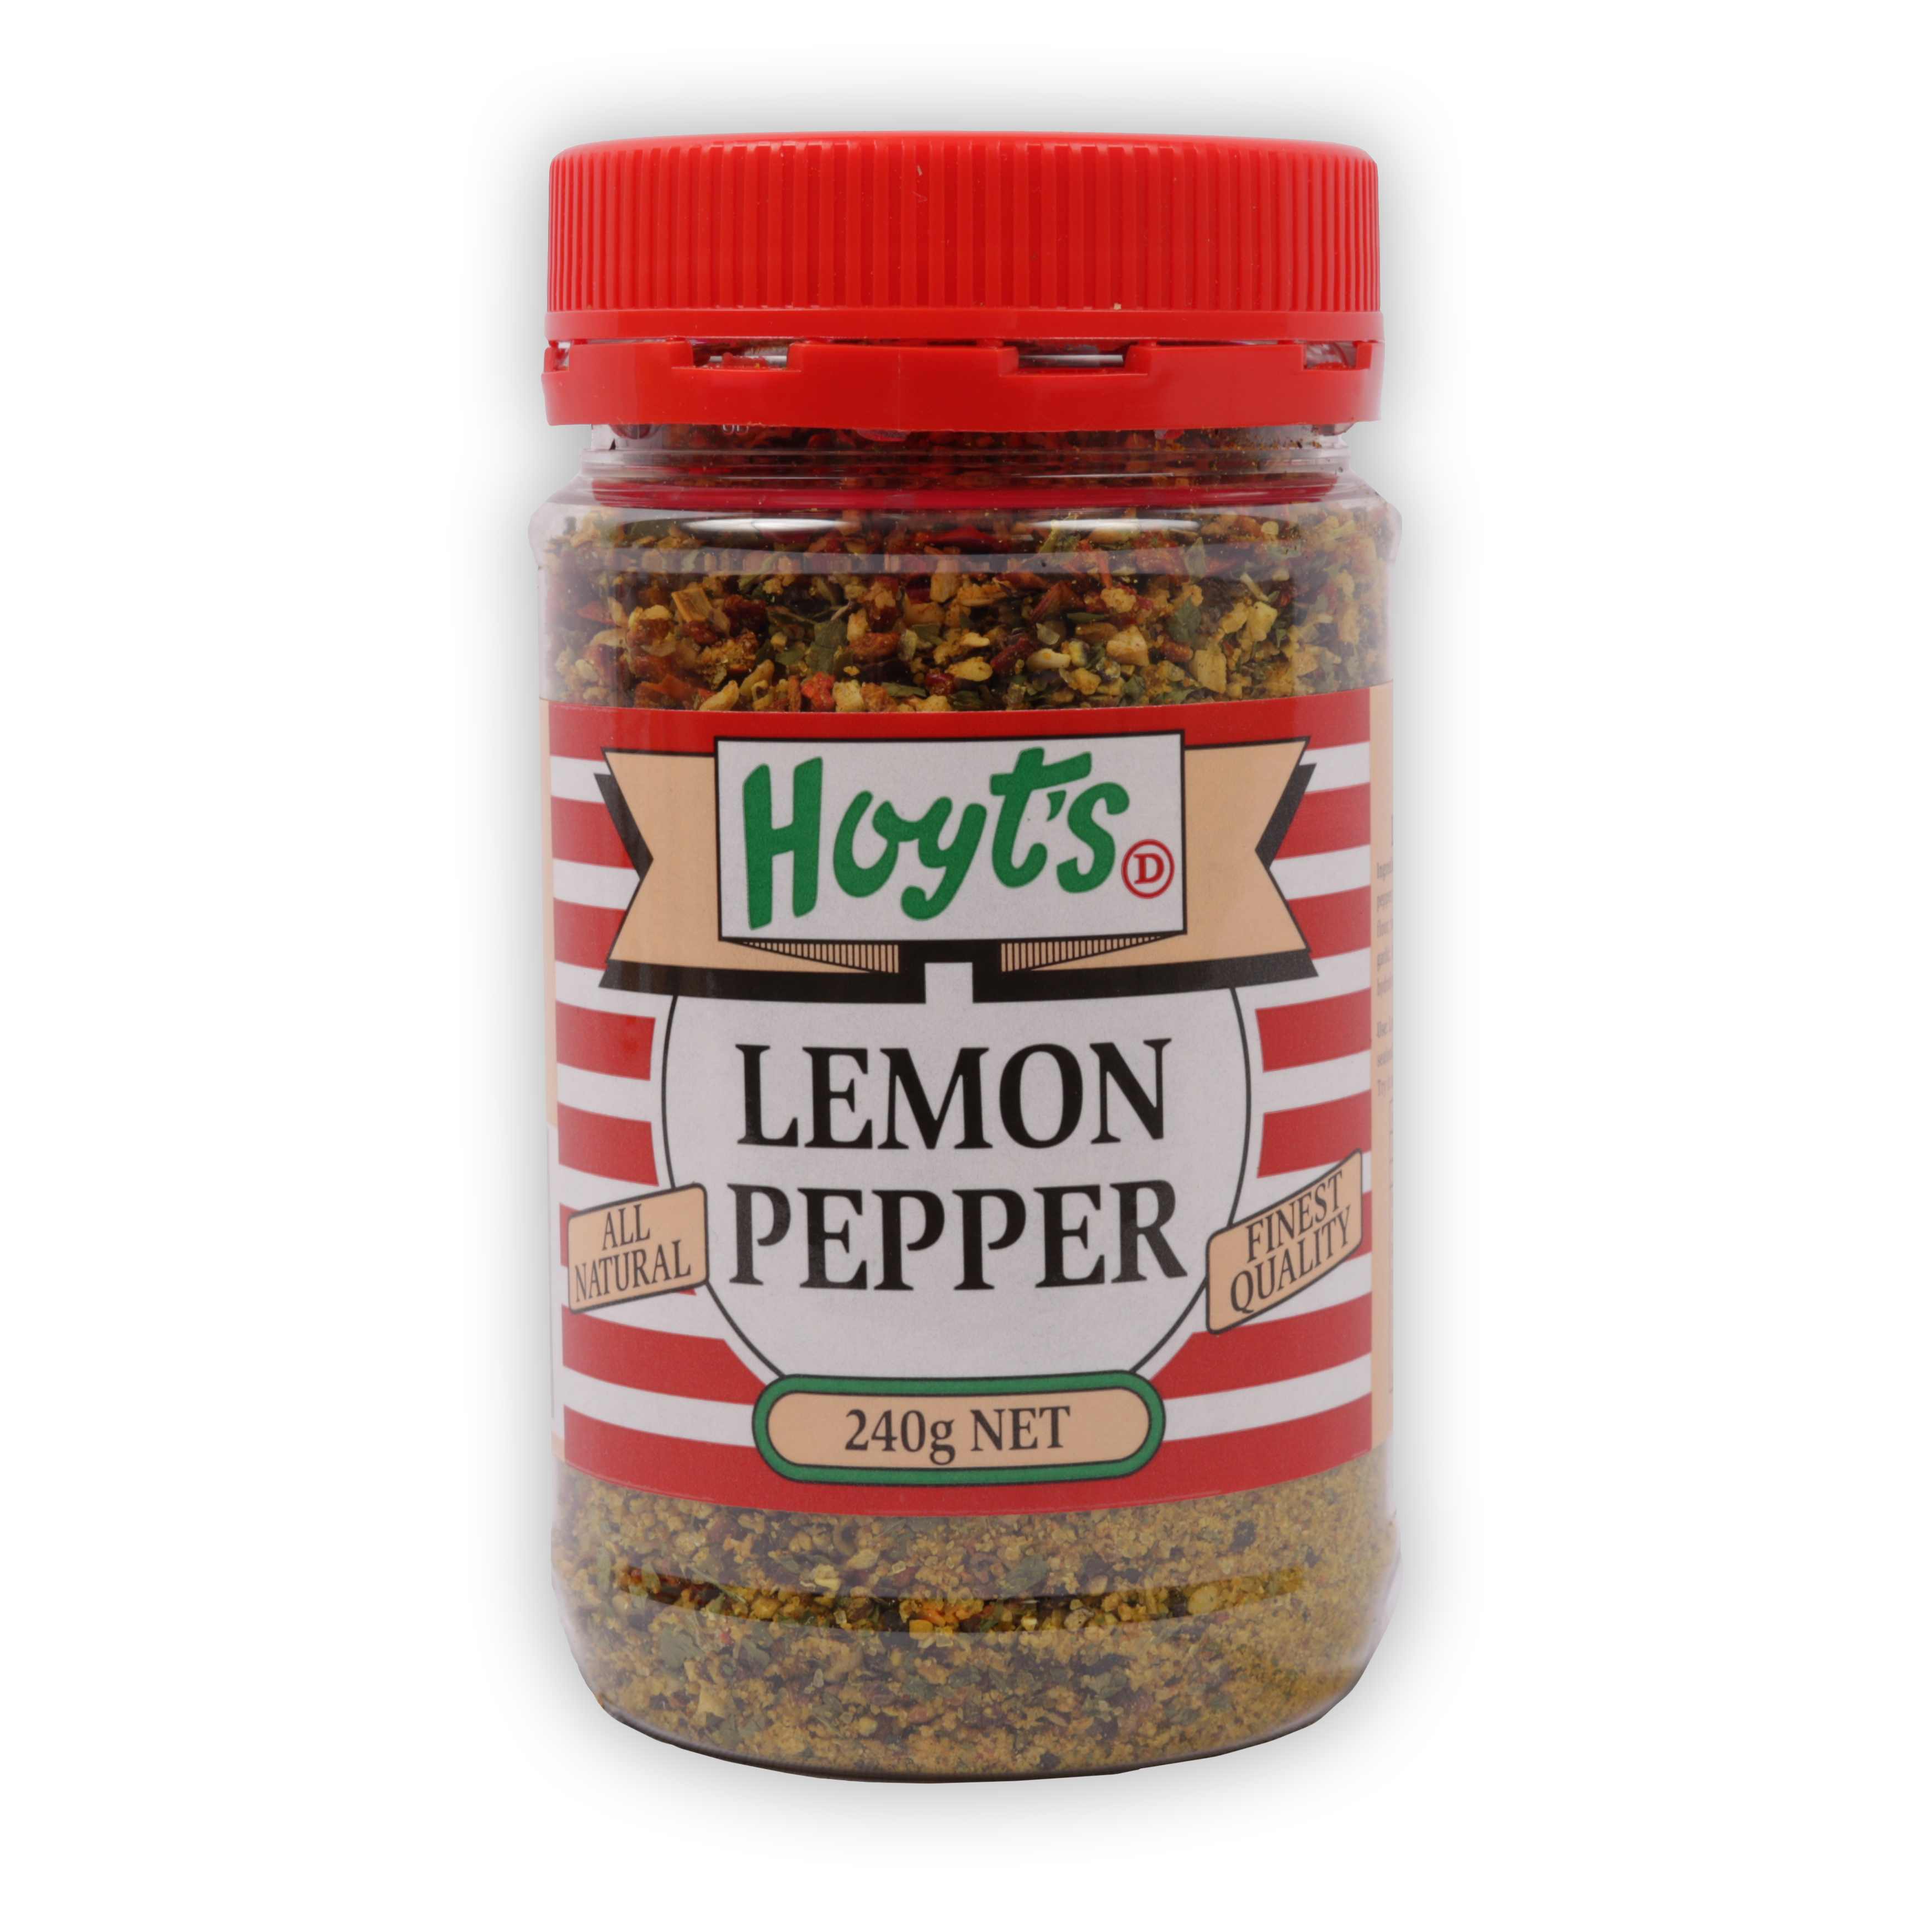 Hoyts Lemon Pepper 240g